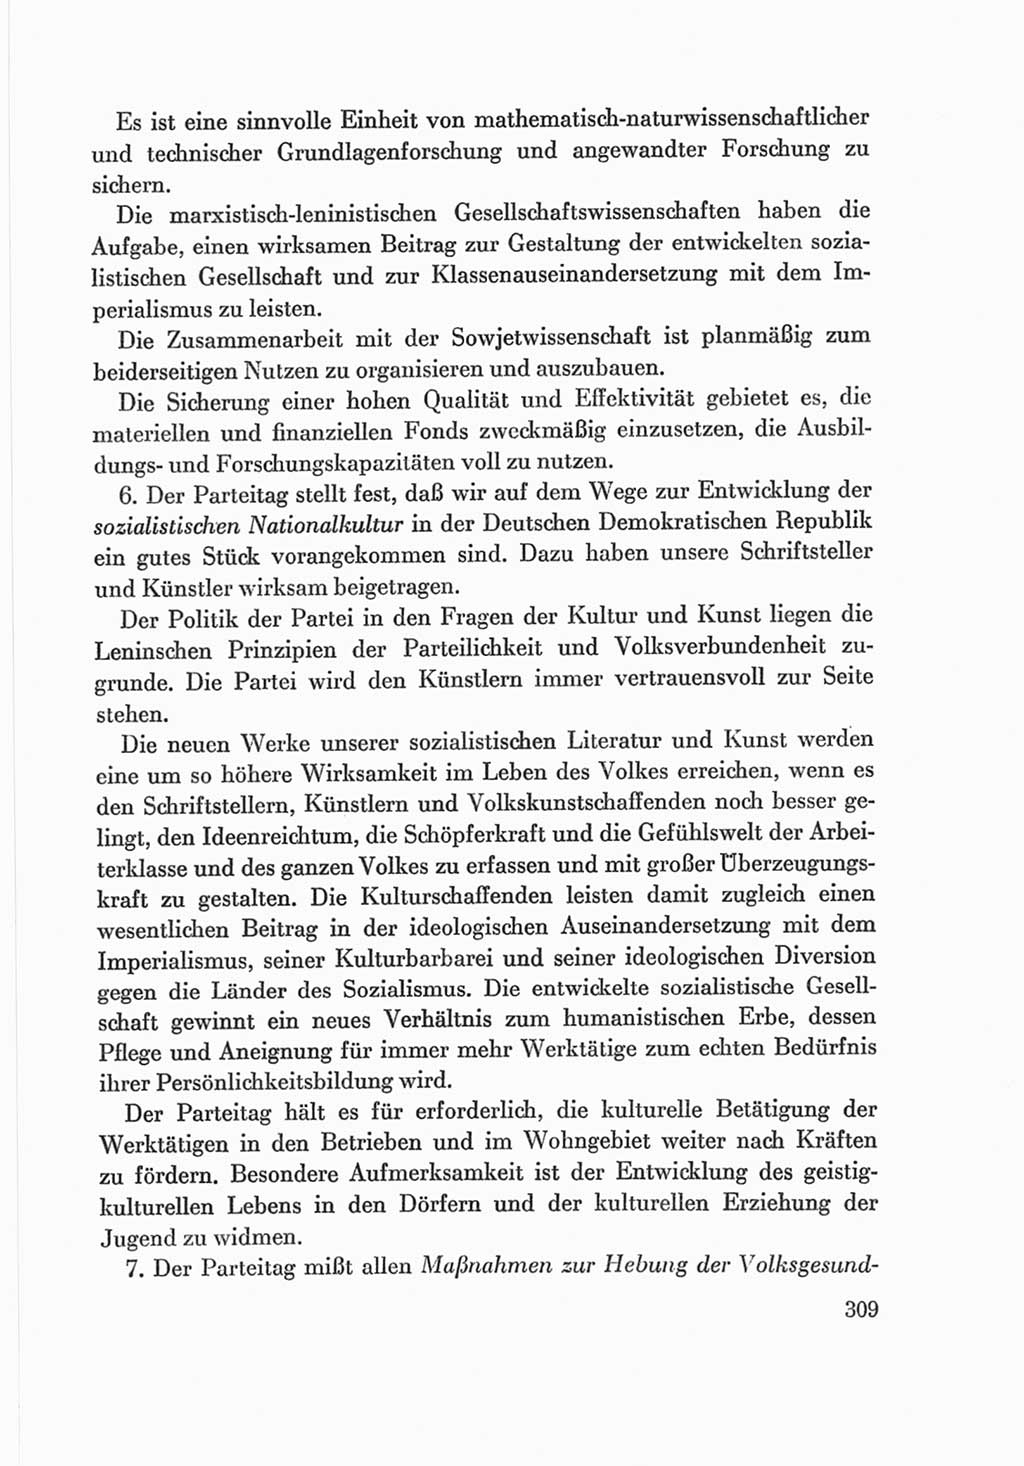 Protokoll der Verhandlungen des Ⅷ. Parteitages der Sozialistischen Einheitspartei Deutschlands (SED) [Deutsche Demokratische Republik (DDR)] 1971, Band 2, Seite 309 (Prot. Verh. Ⅷ. PT SED DDR 1971, Bd. 2, S. 309)